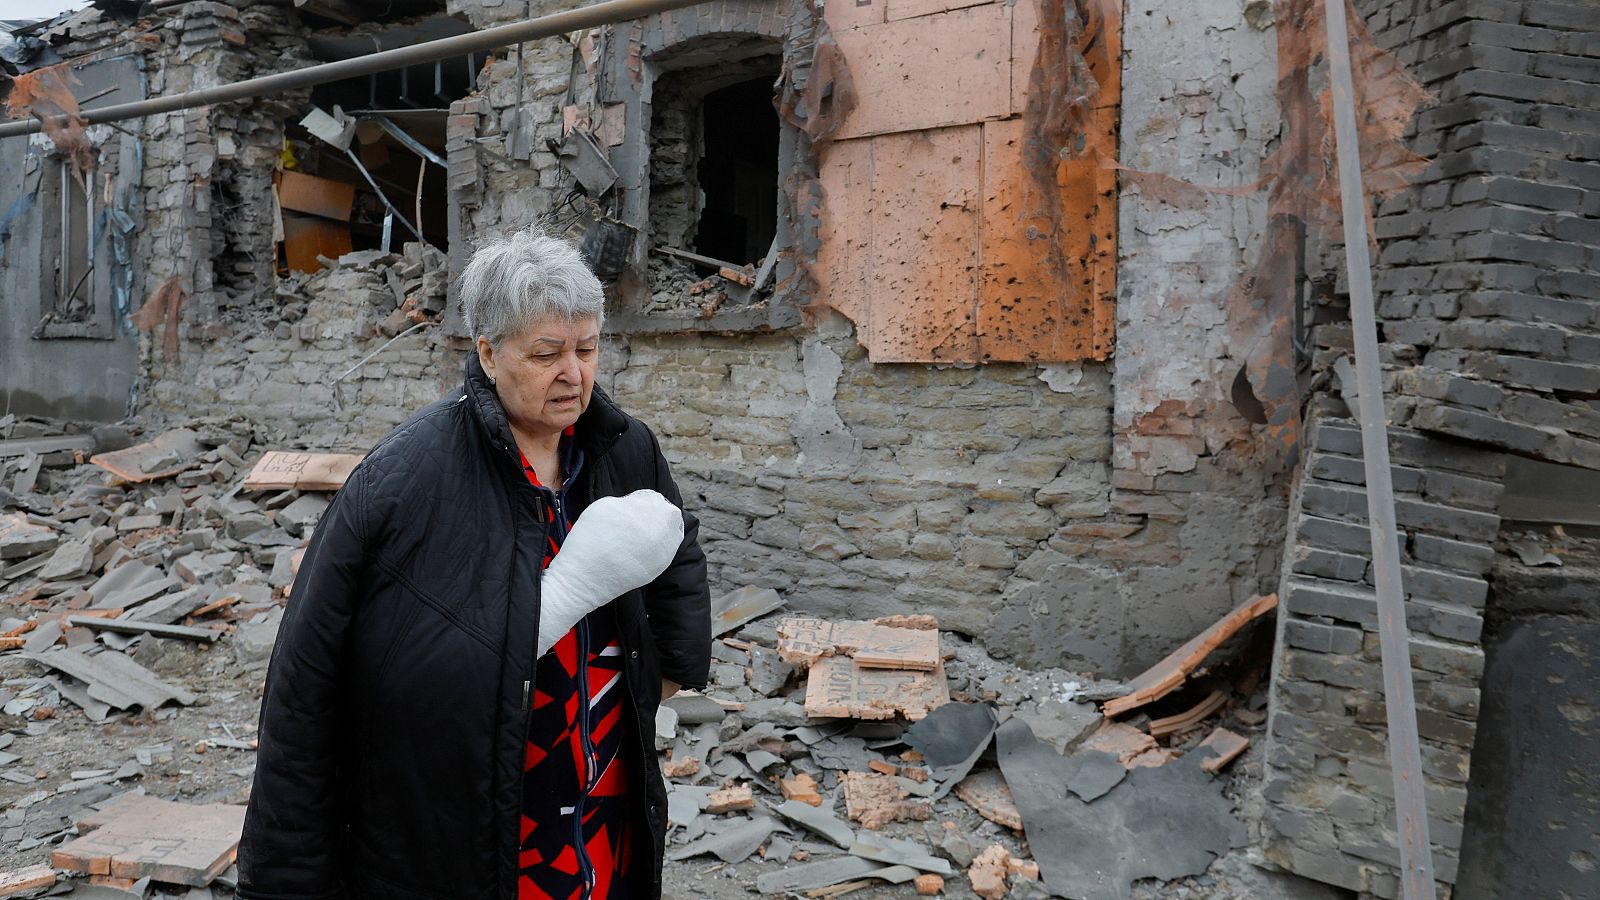 Una mujer herida en un bombardeo enfrente de su casa destruida en Donetsk